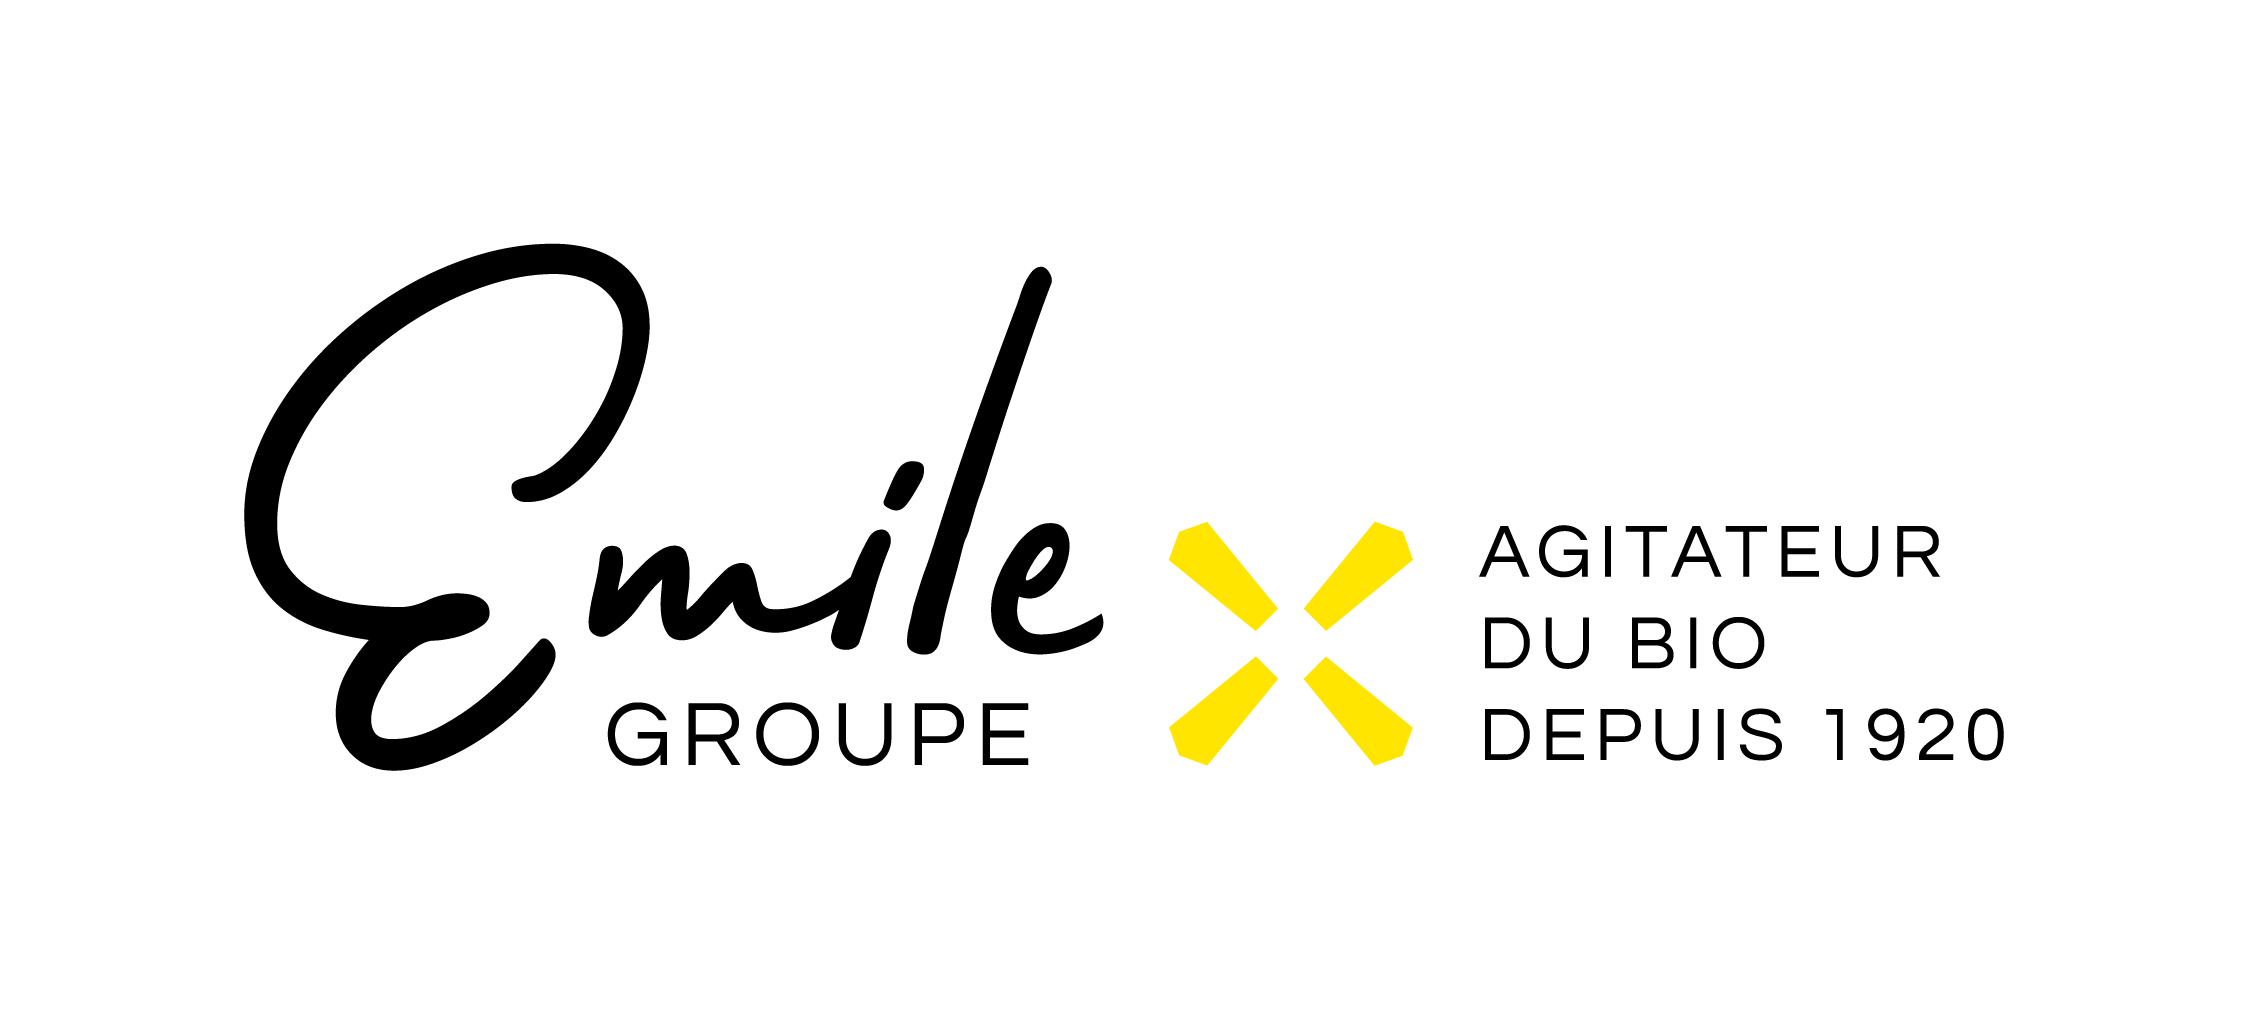 Groupe Emile 24